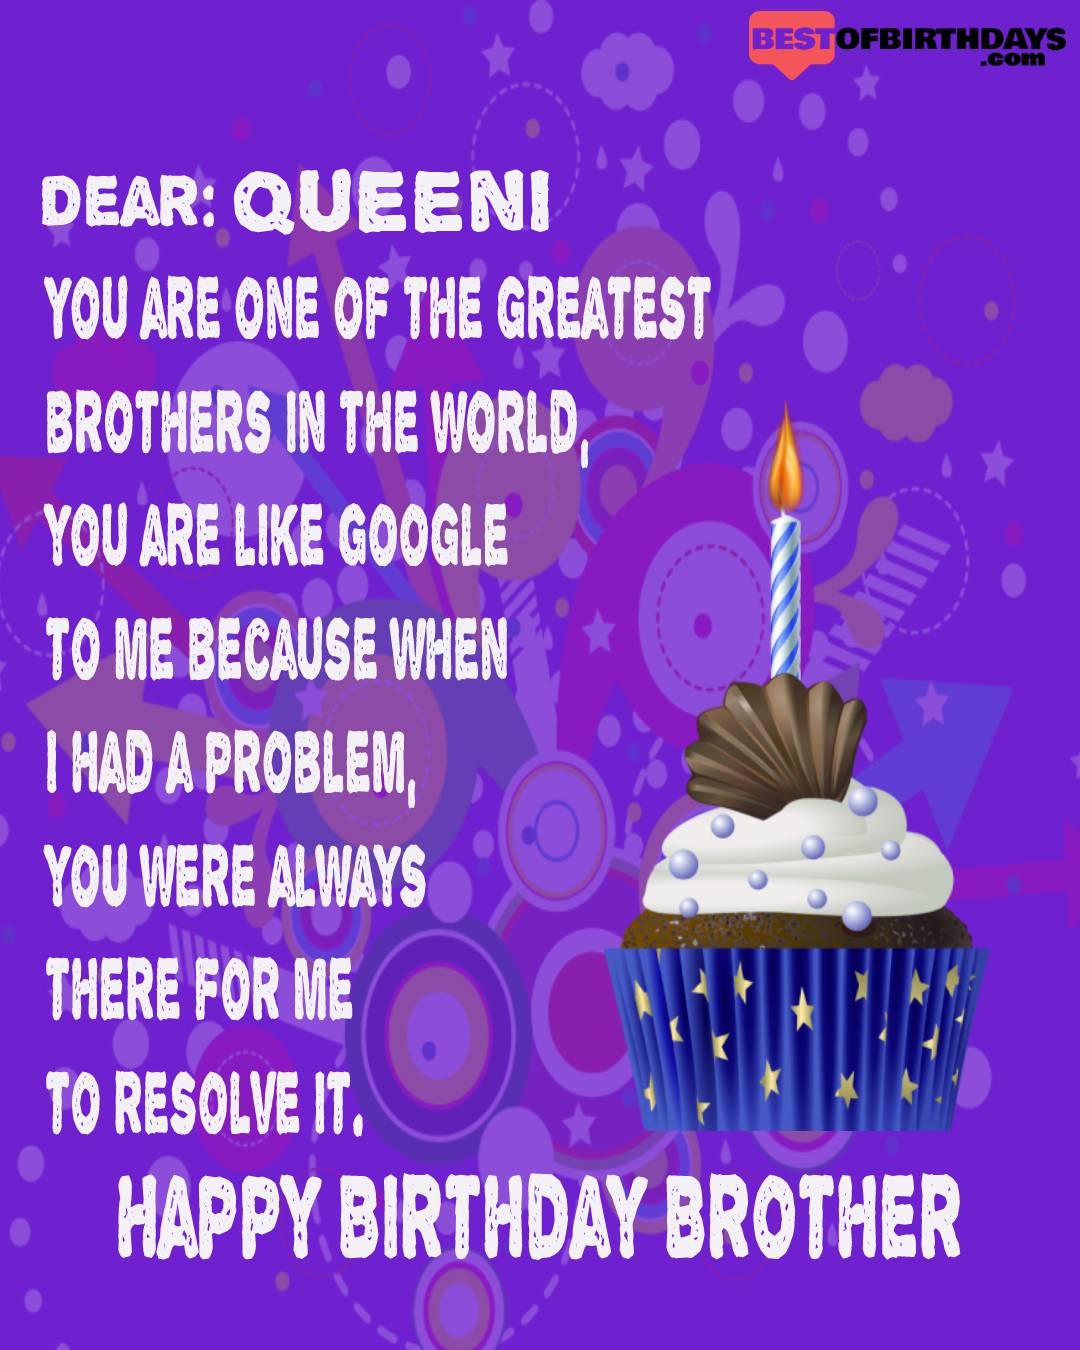 Happy birthday queeni bhai brother bro